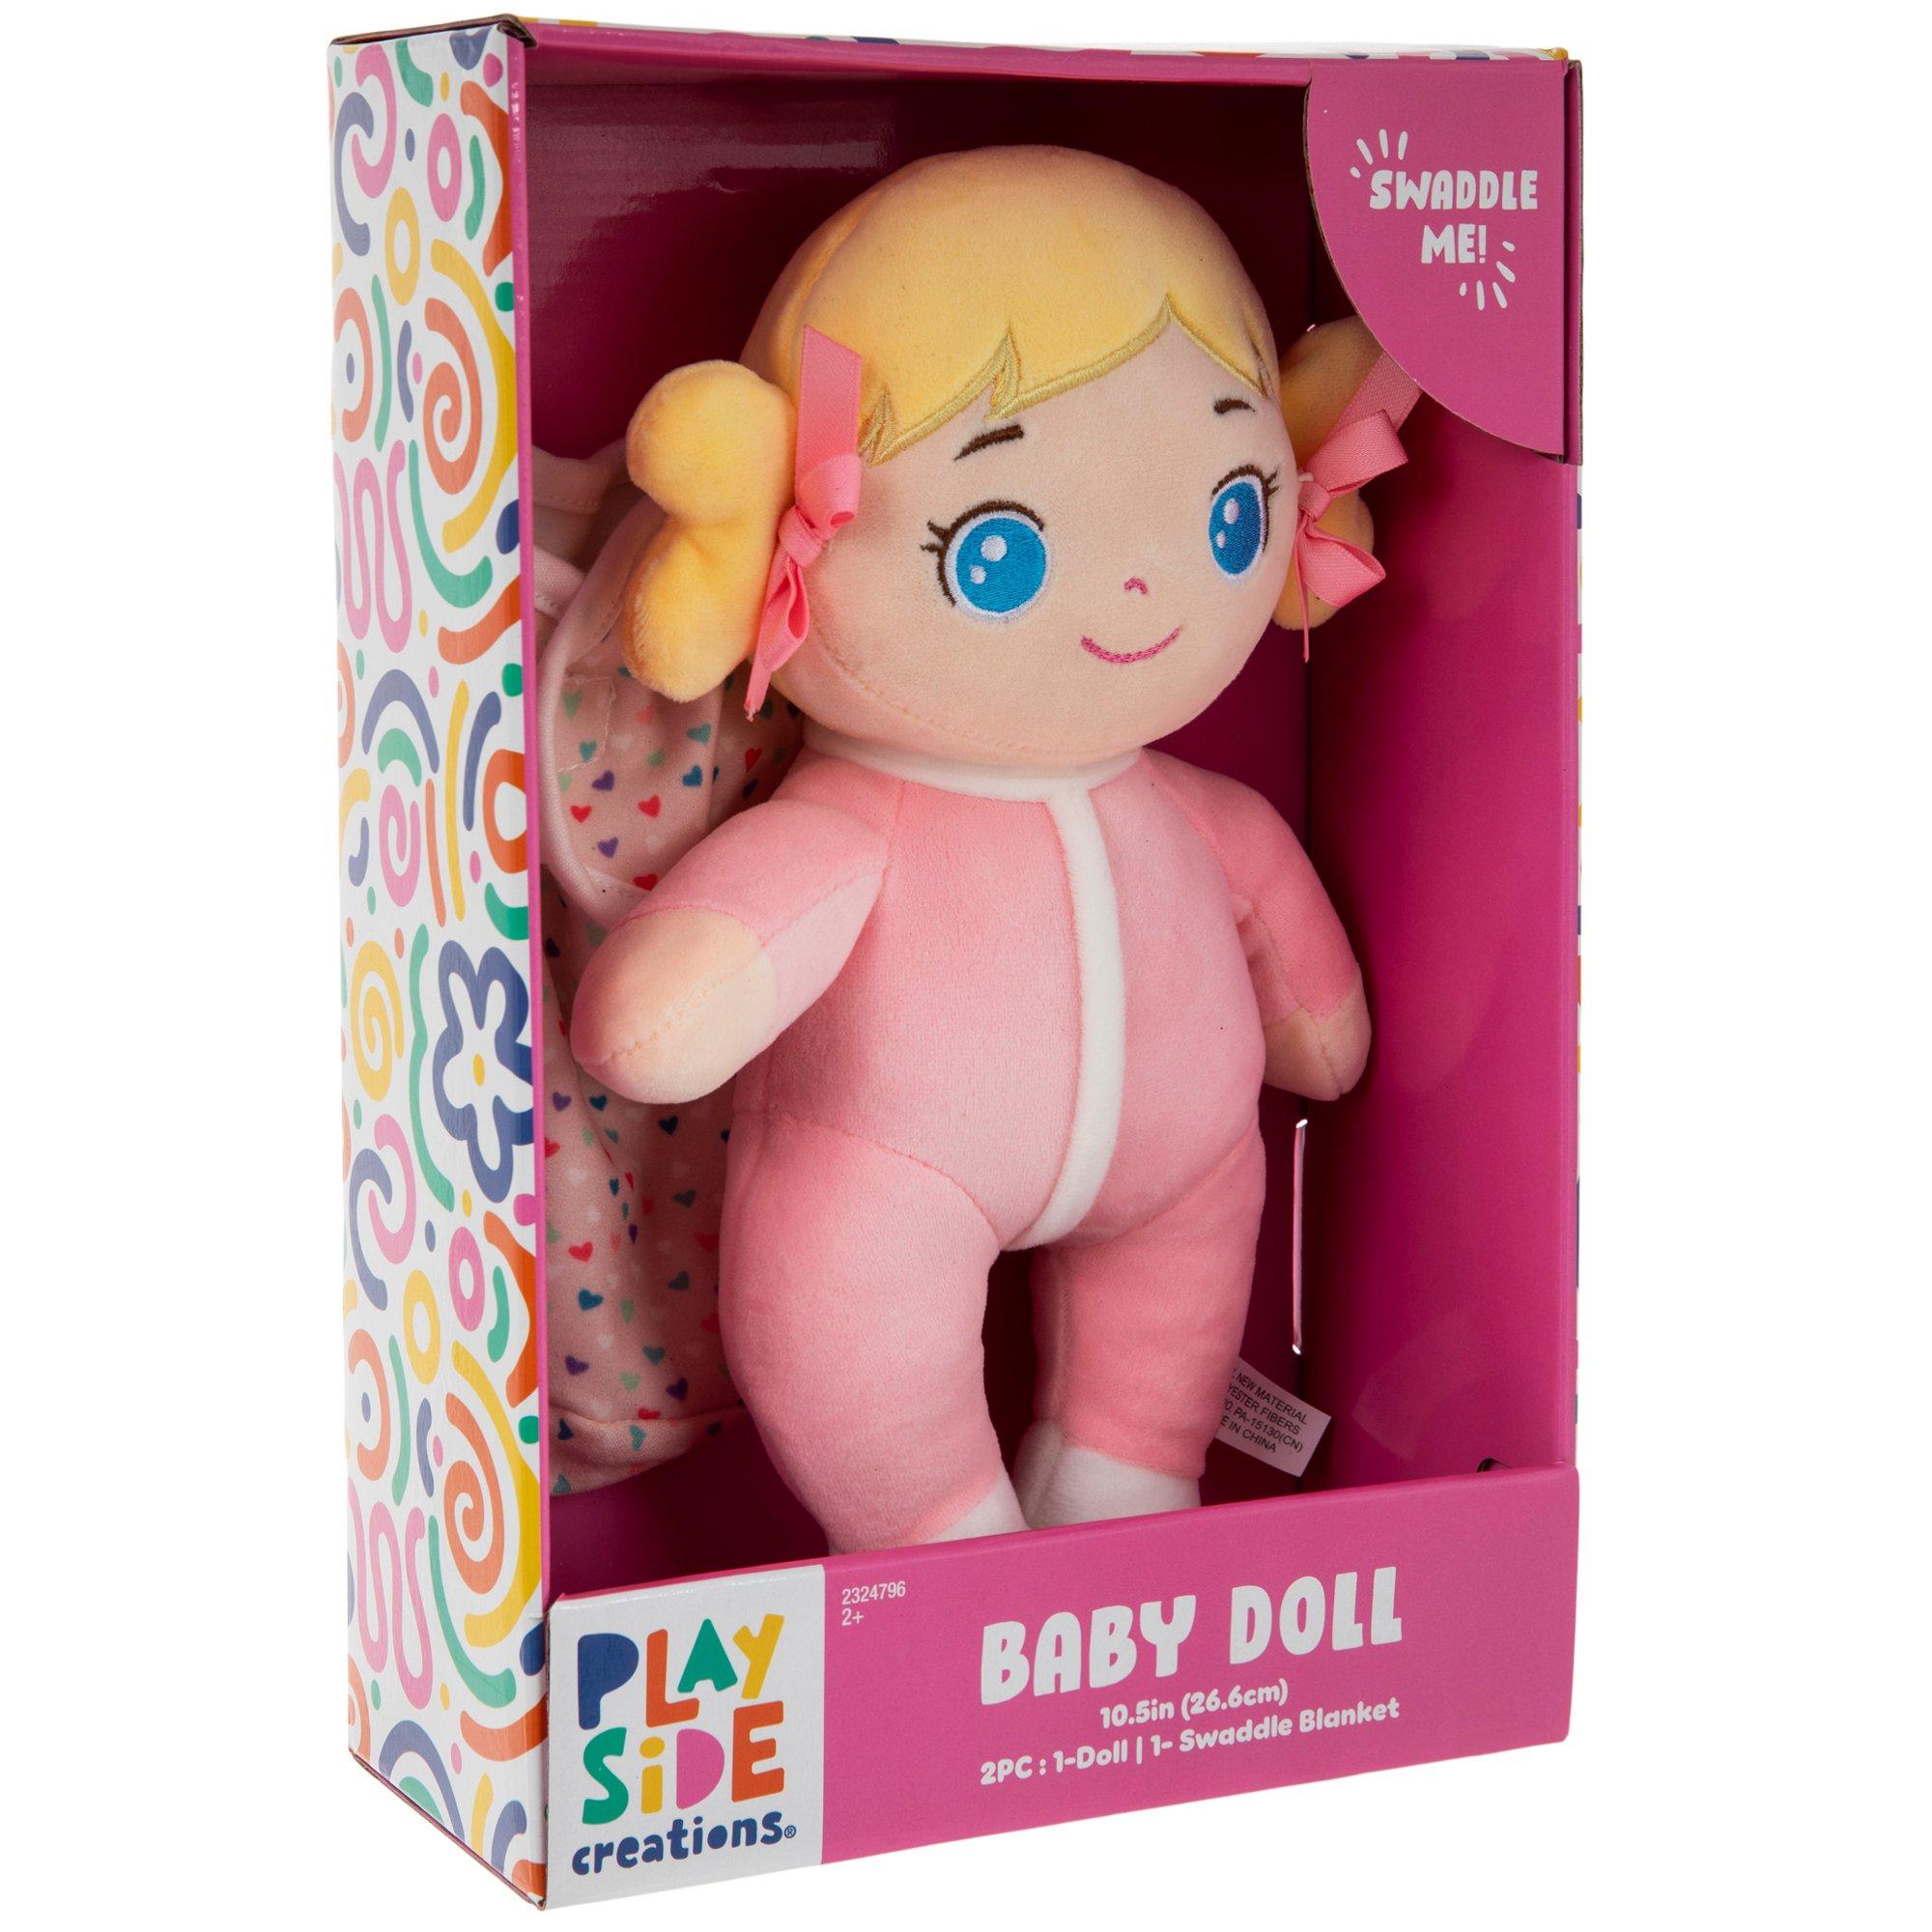 Gabby's Dollhouse Playscene Kit, Hobby Lobby